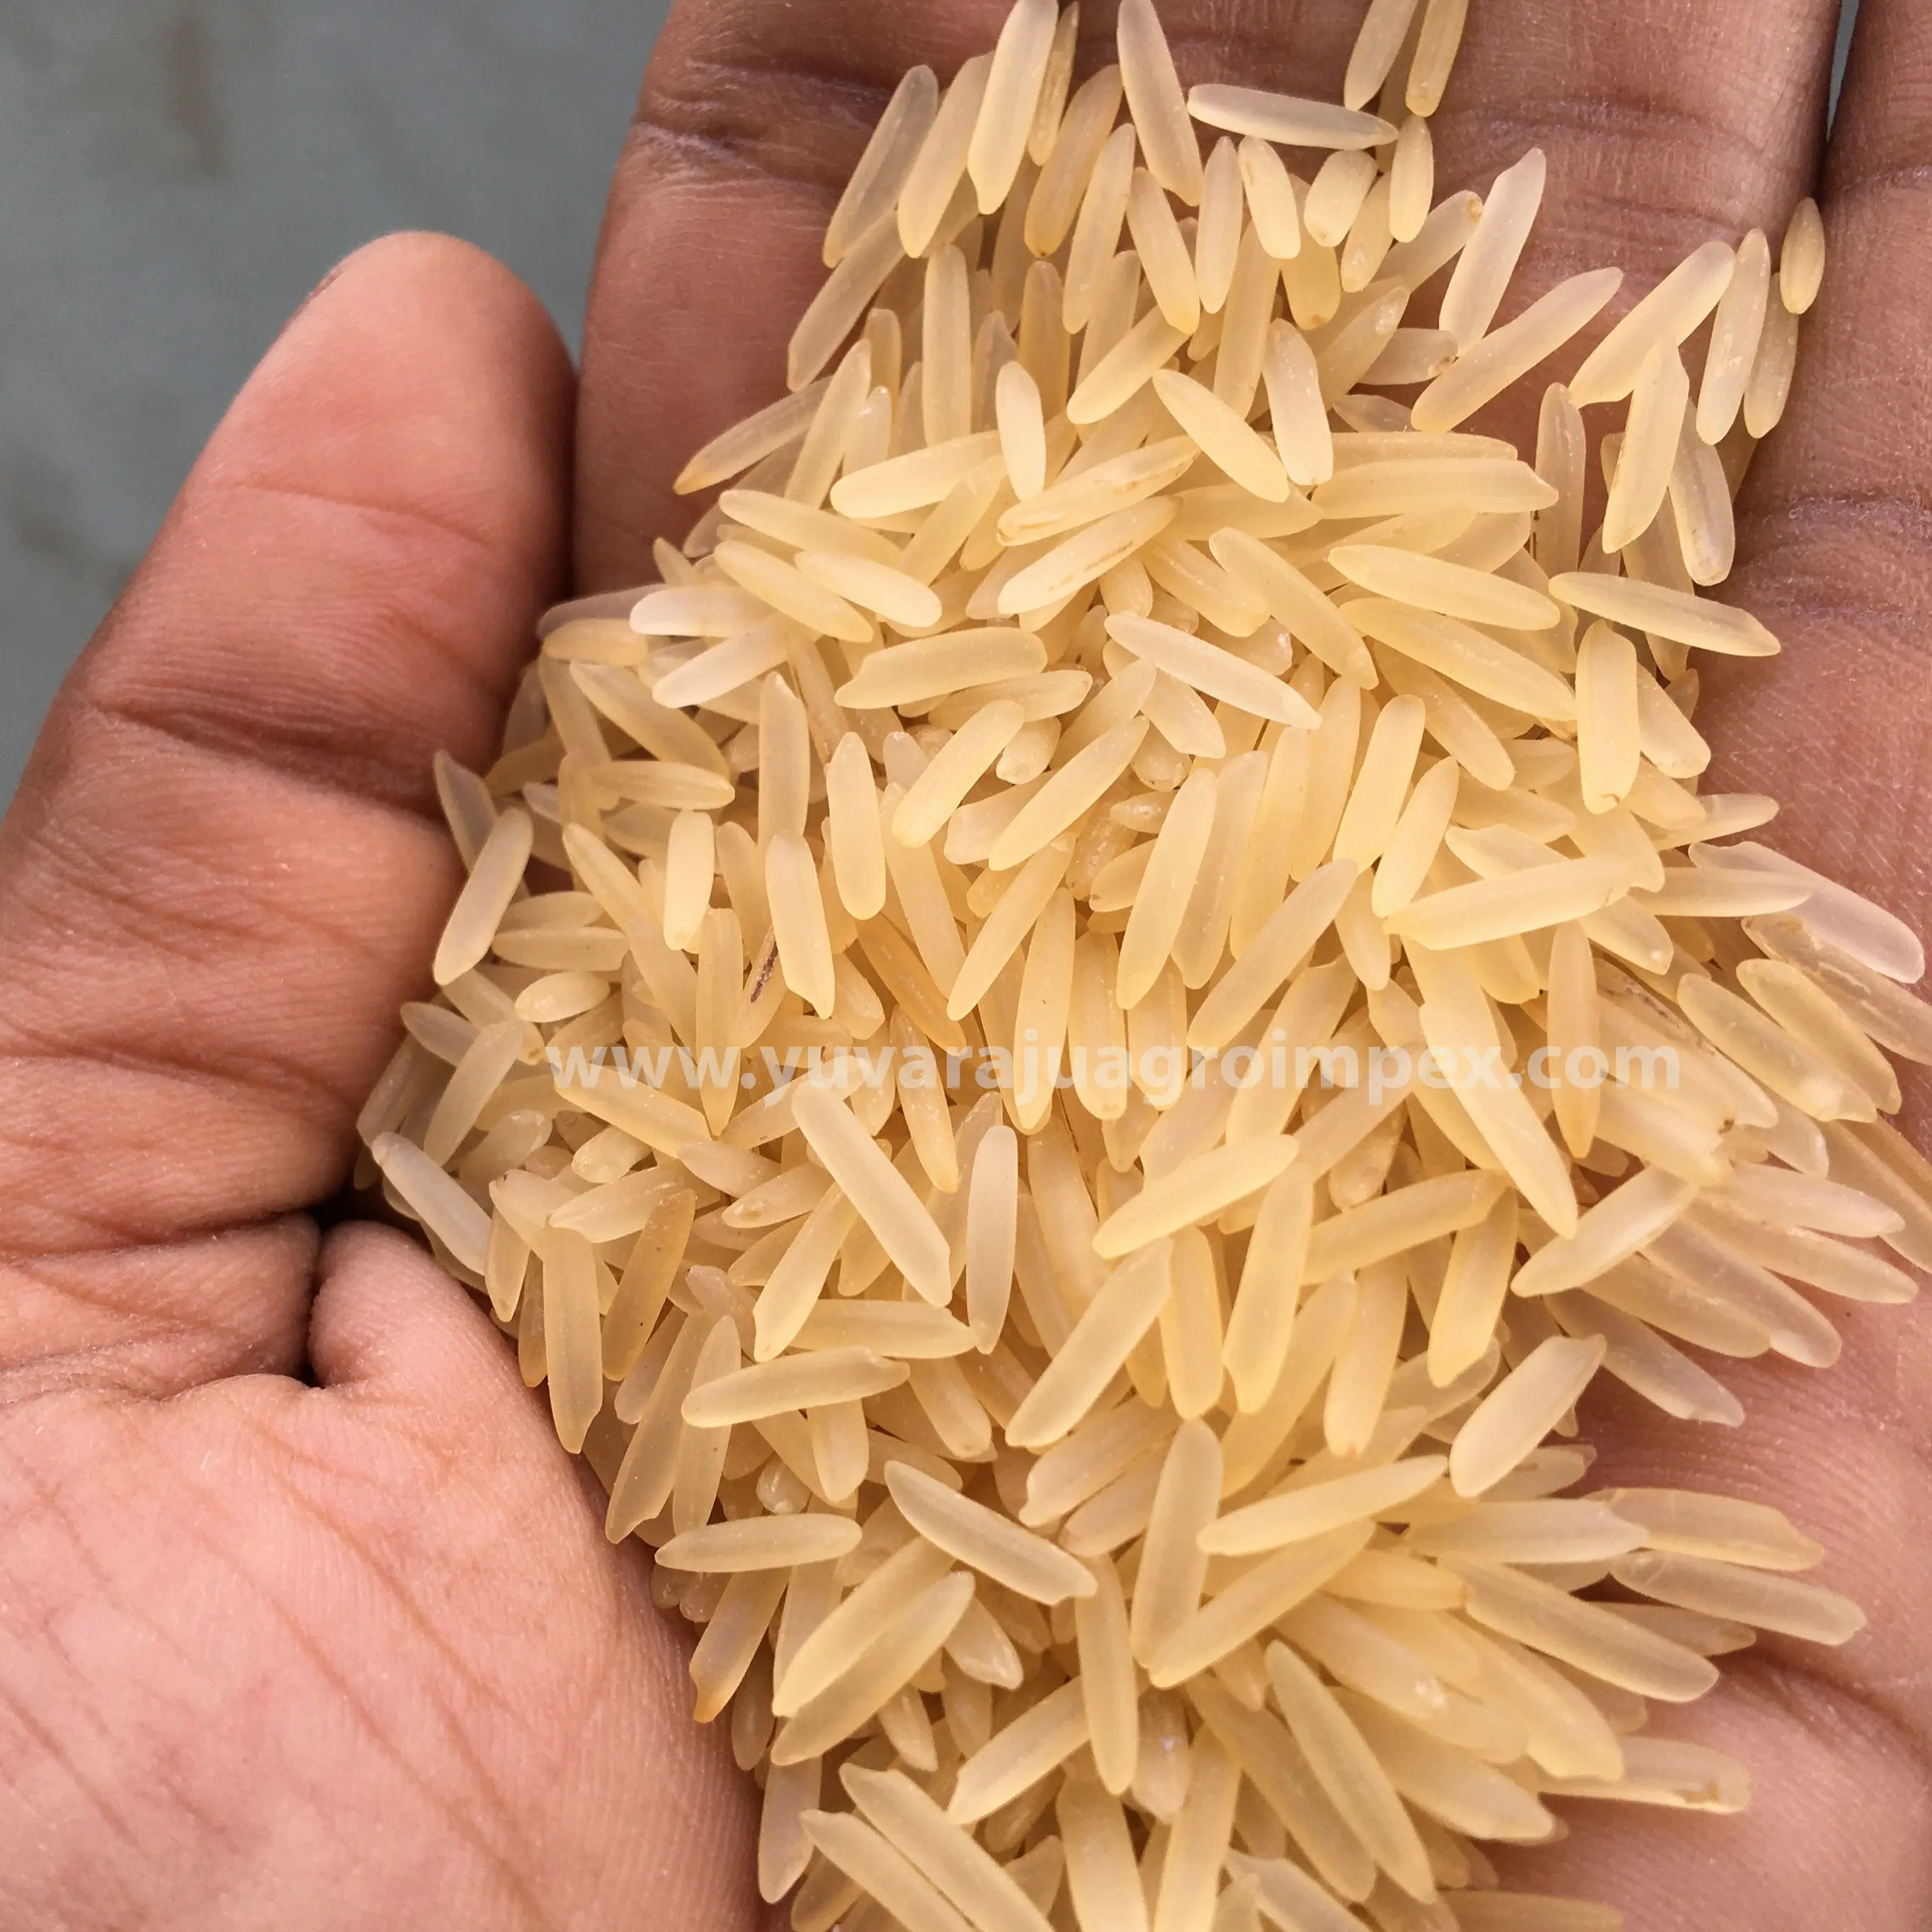 Лучшее качество, экспортеры риса басмати в Индии